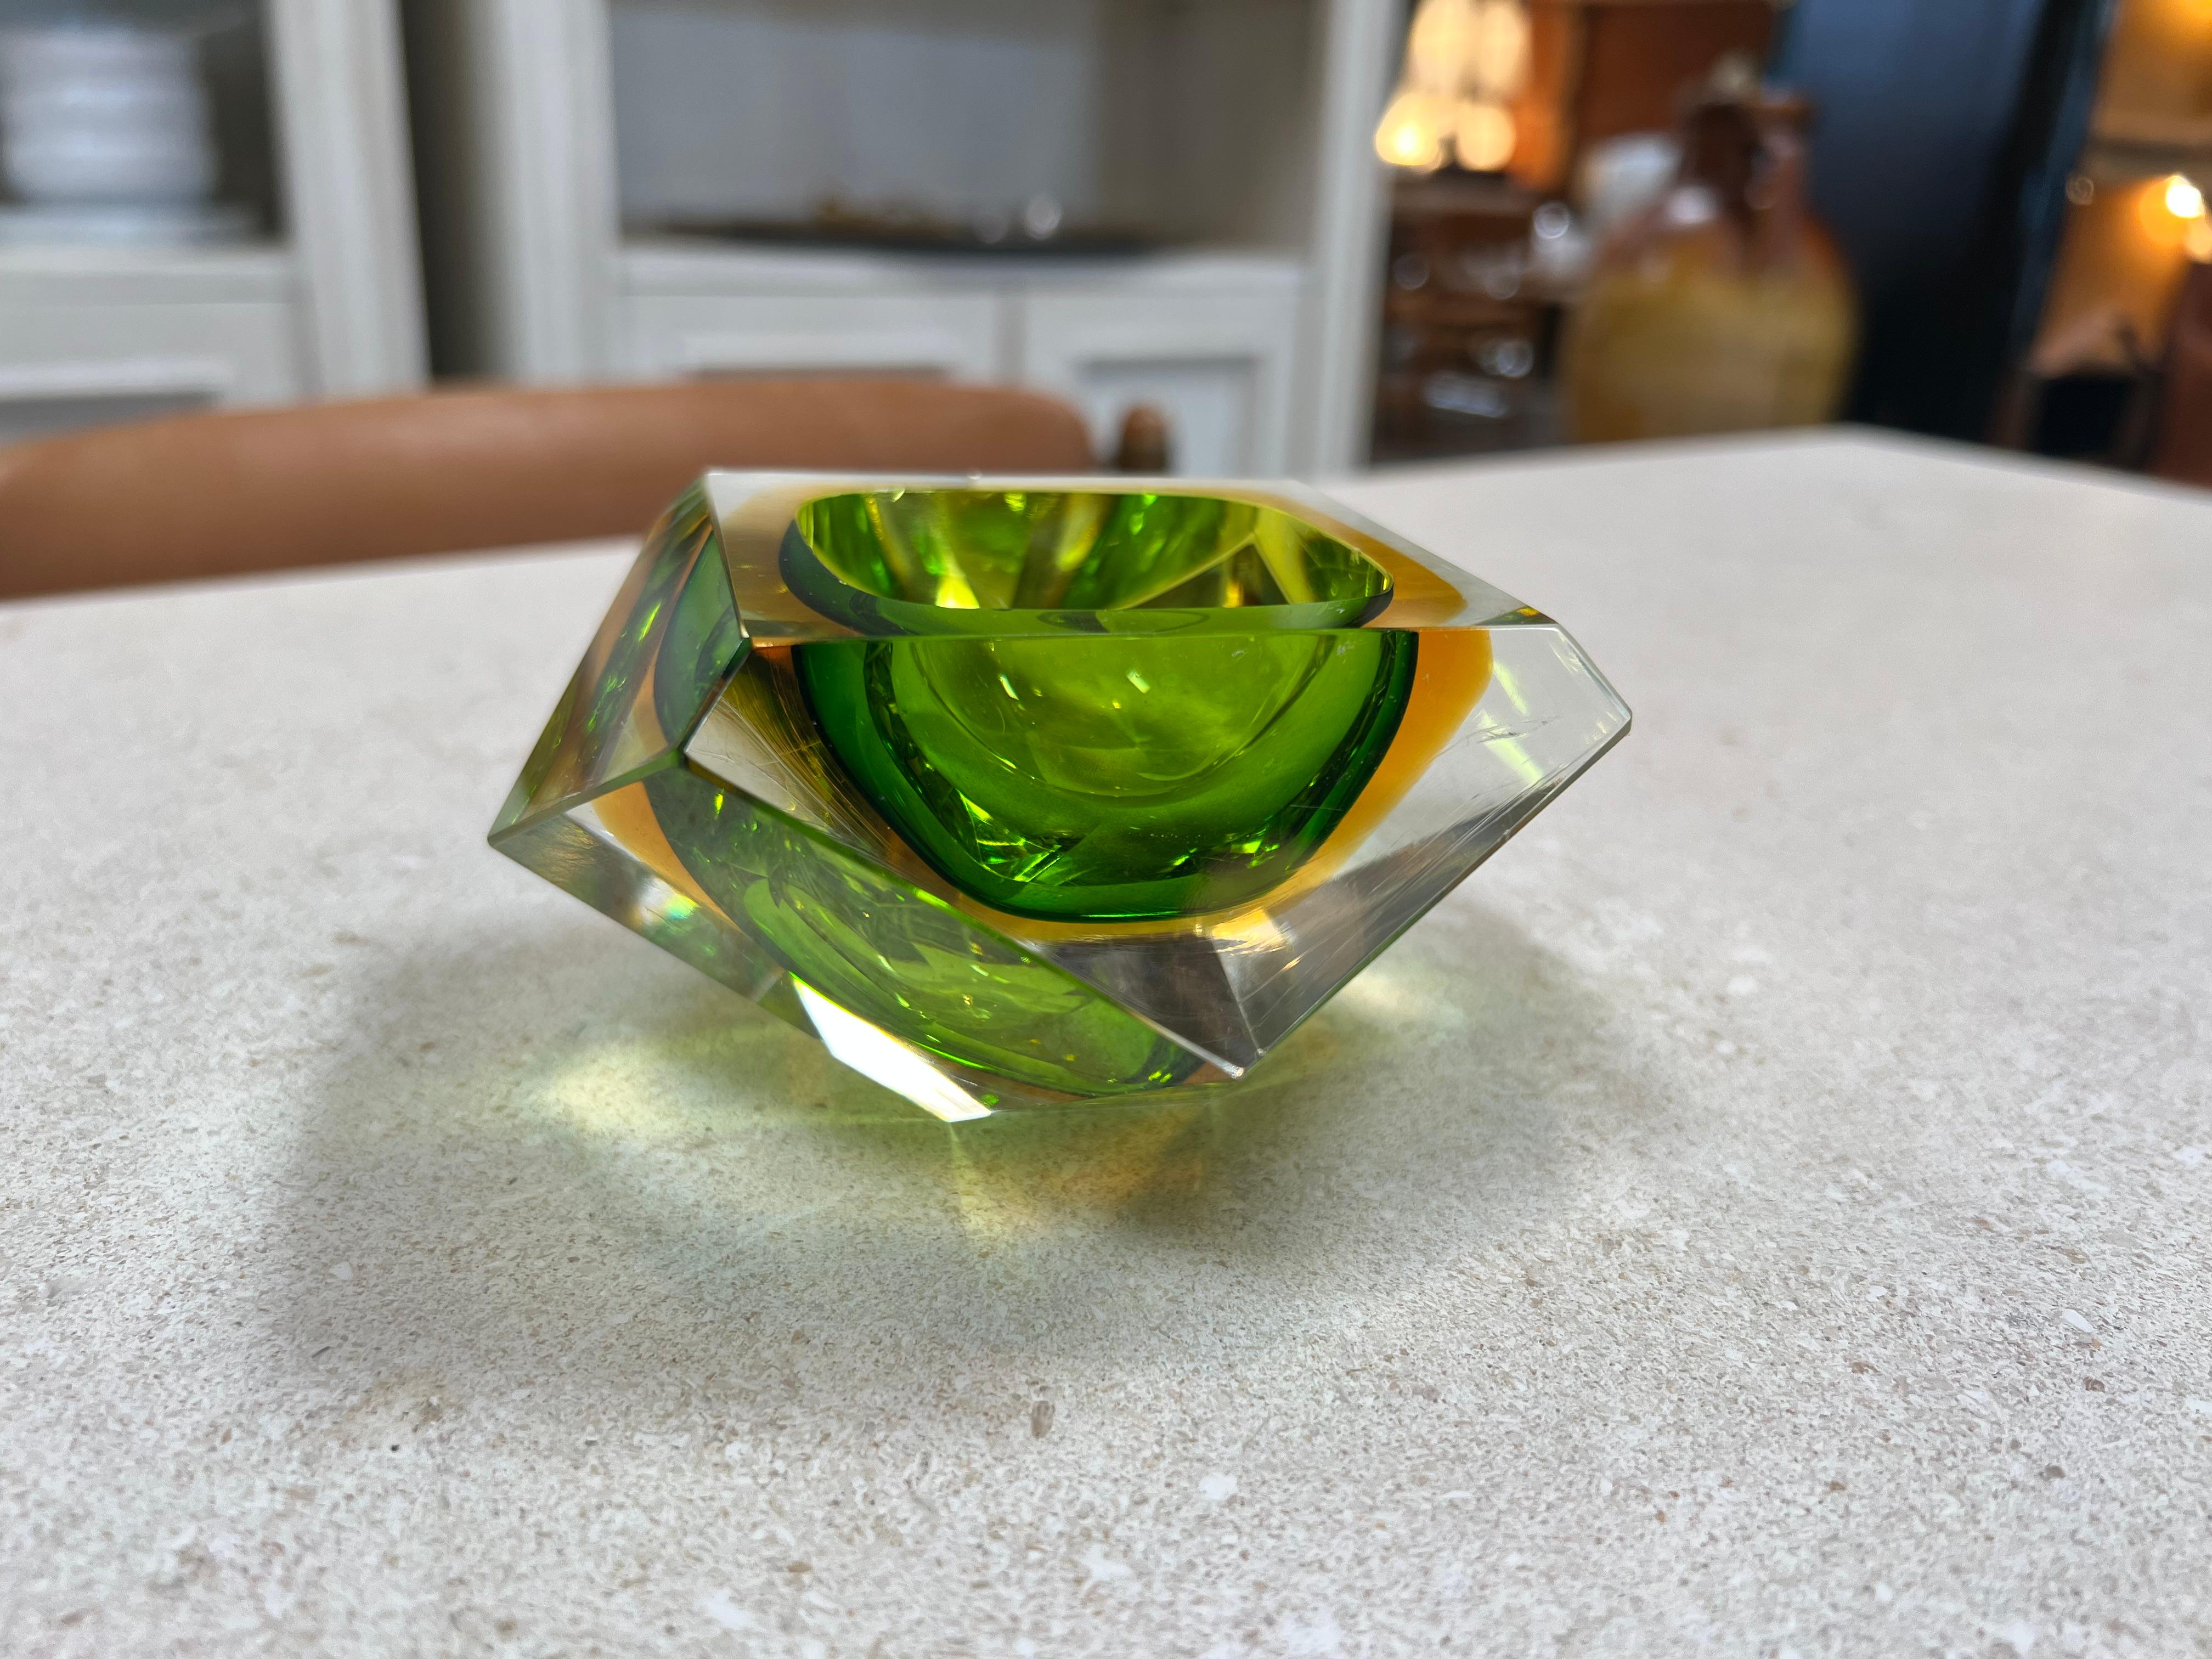 Le magnifique cendrier italien en verre vert submergé des années 1960 est une pièce captivante qui dégage un sentiment de tranquillité et de sophistication. Fabriqué avec soin, ce cendrier présente un design envoûtant avec un verre teinté en vert